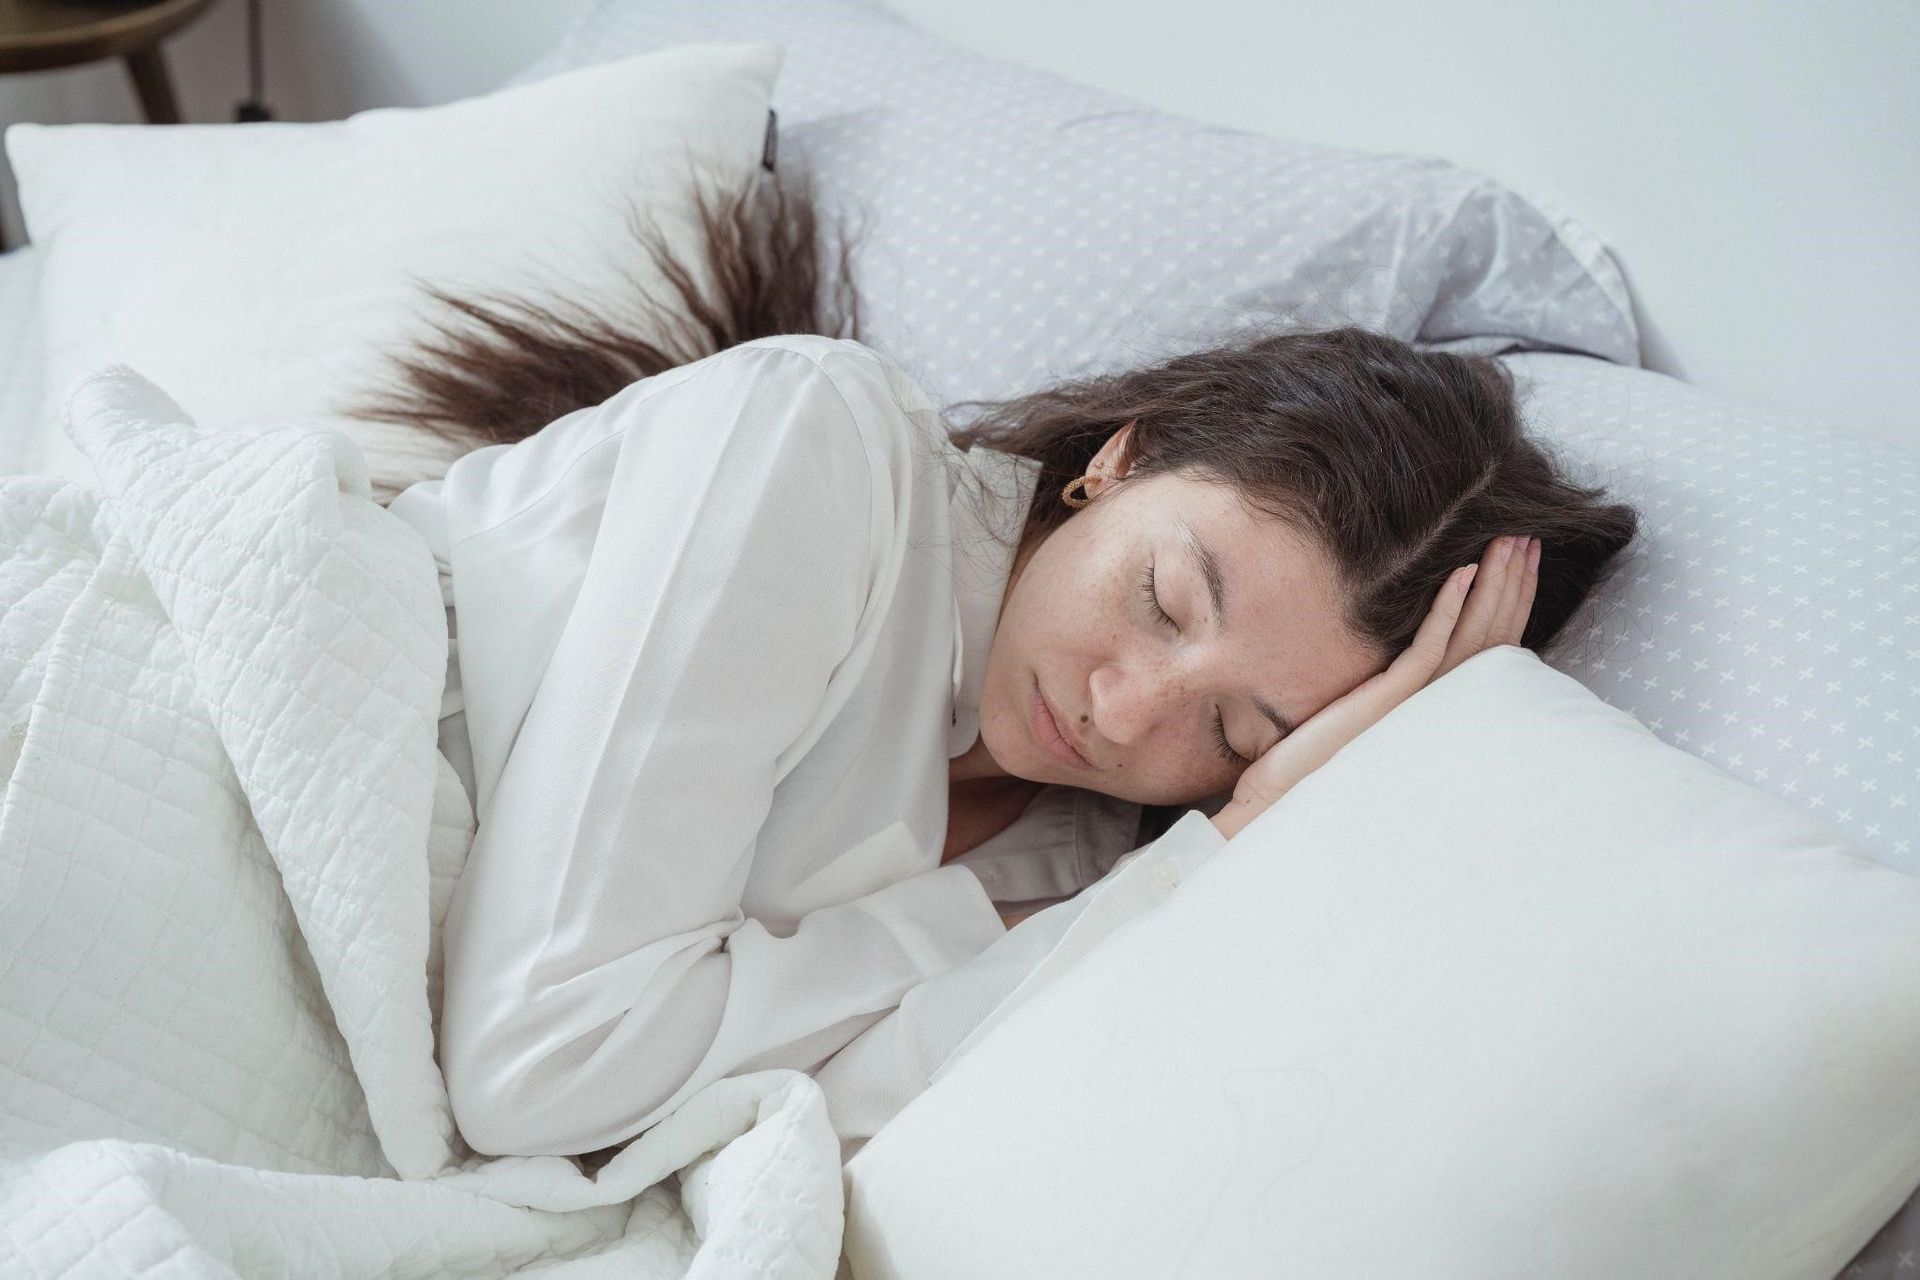 A portrait of a woman suffering from sleep apnea